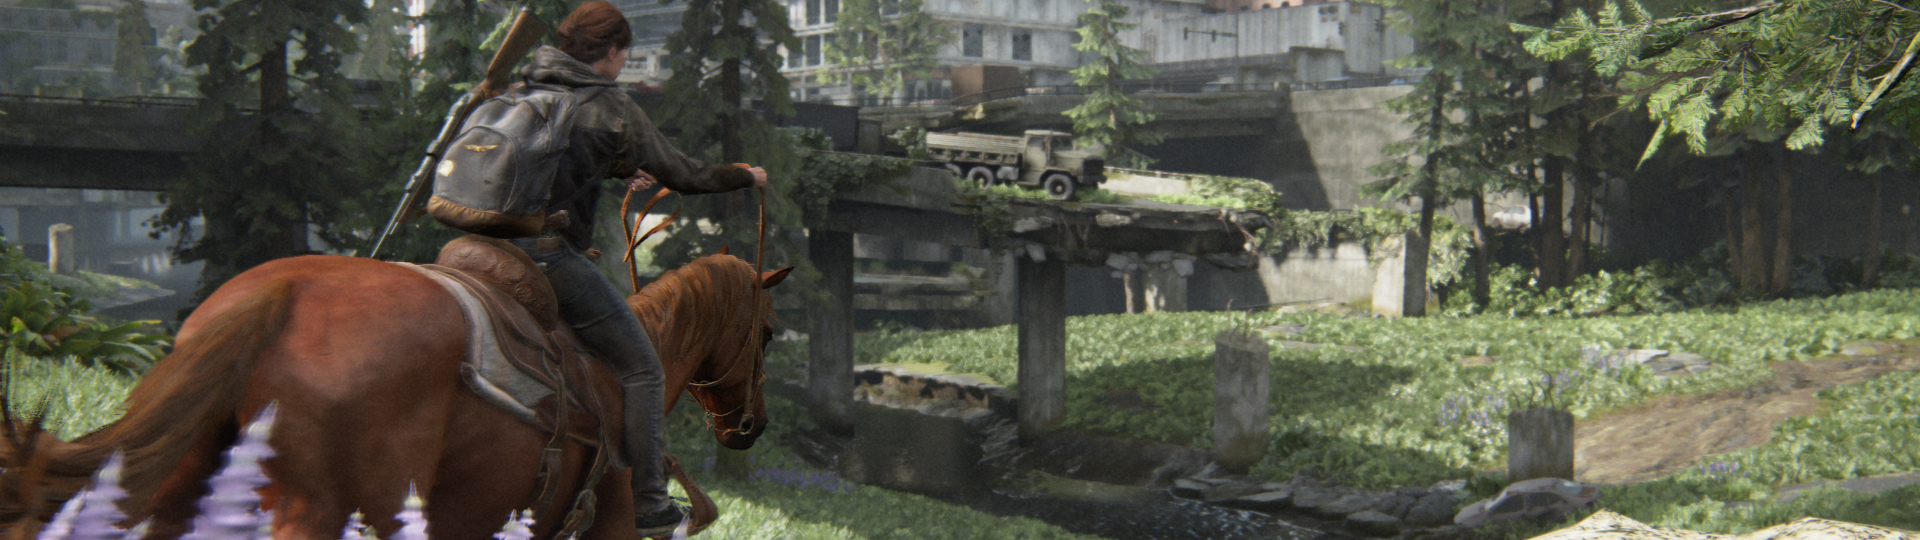 Zvukový designer Last of Us 2 bude pracovat na druhém God of War | Novinky